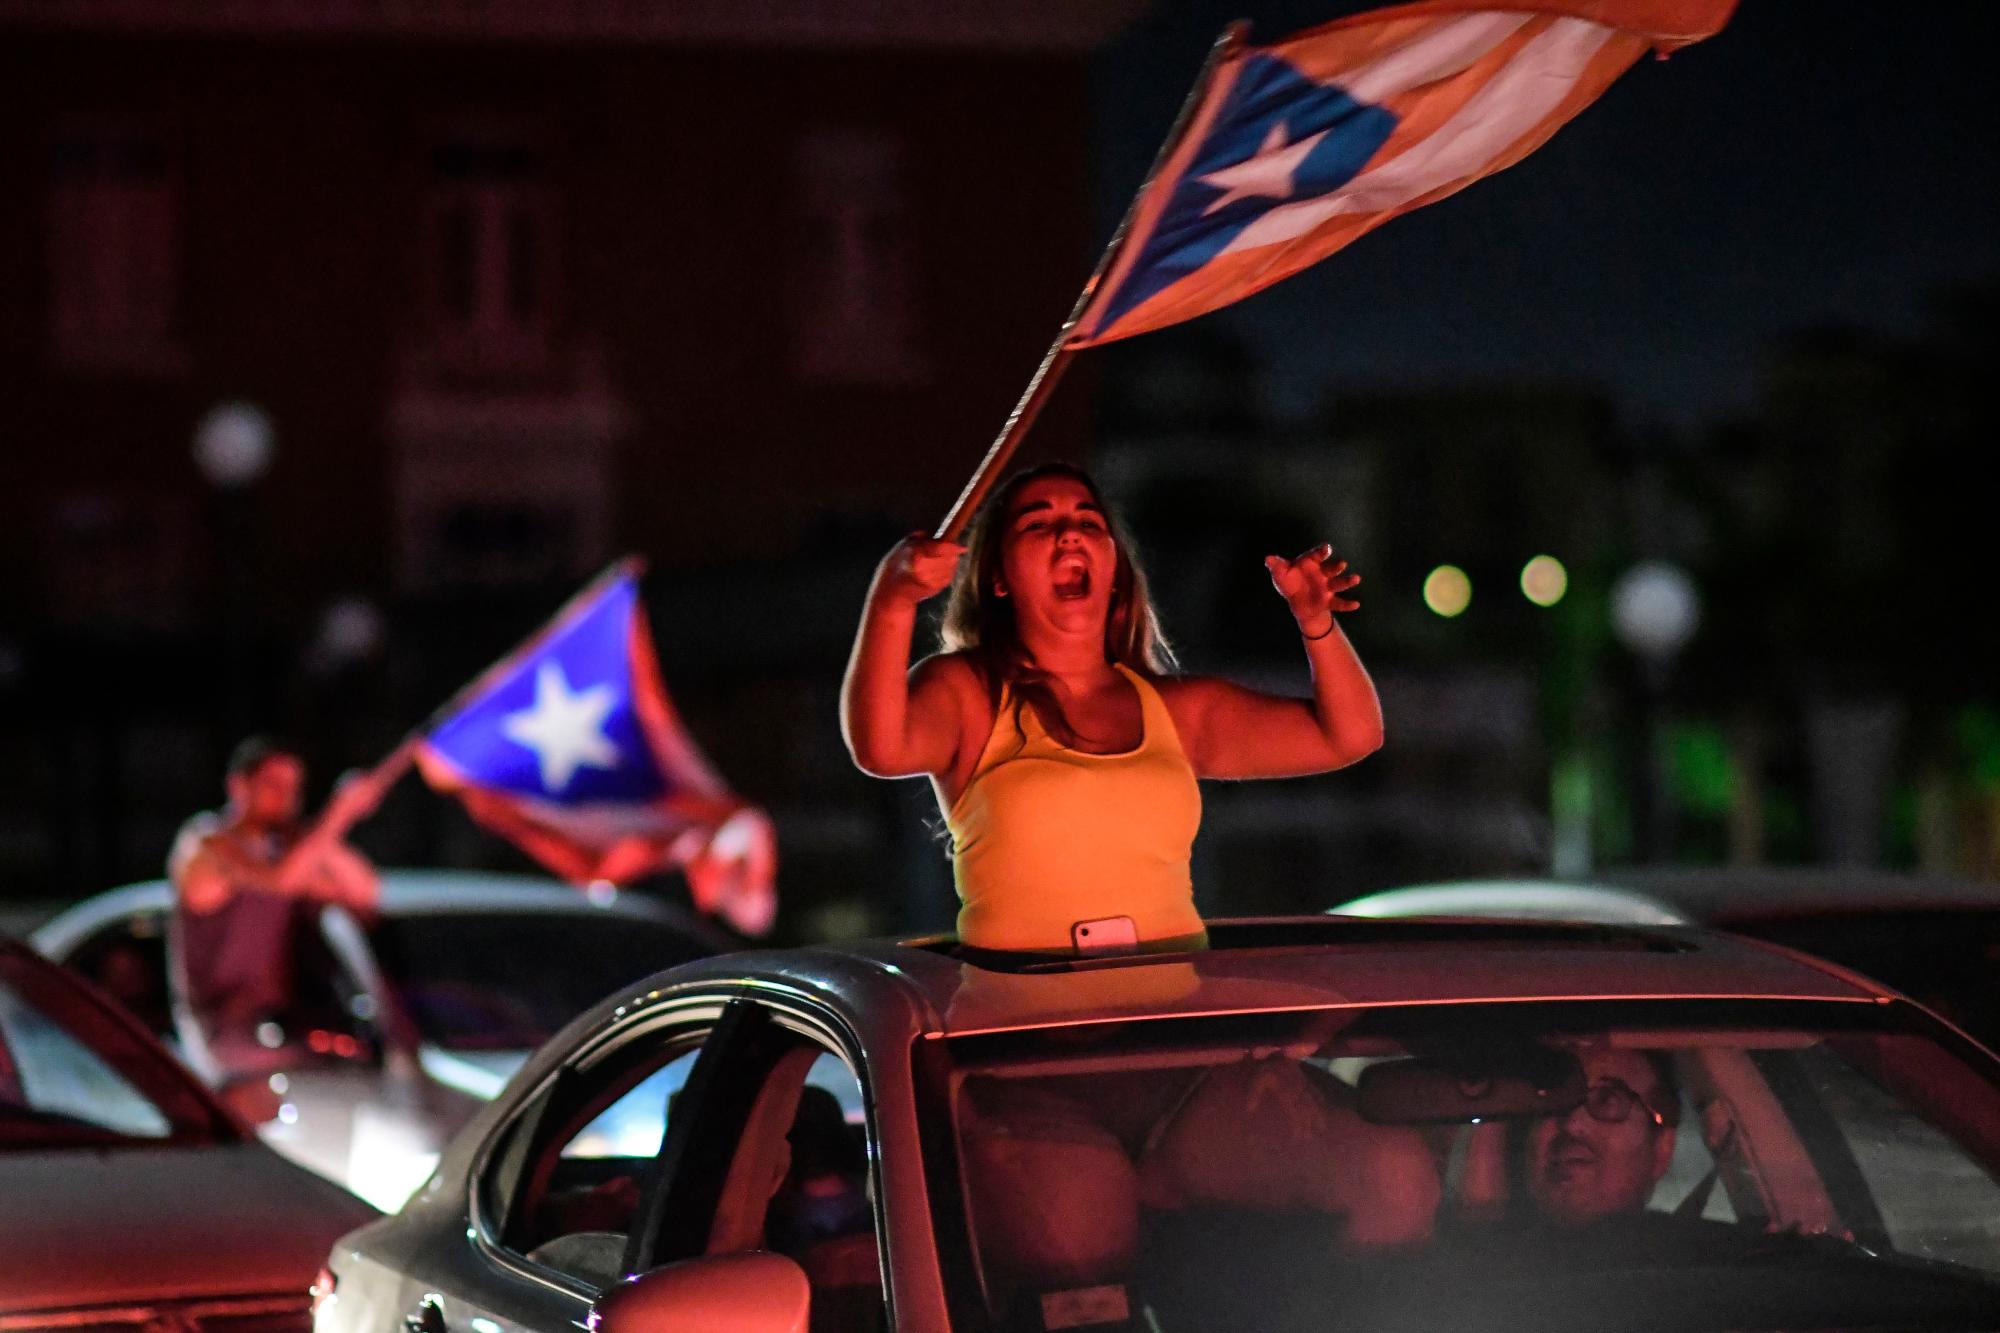 La gente celebra, luego de que el gobernador Ricardo Rosselló anunció que renunciará el 2 de agosto luego de casi dos semanas de protestas y agitación política provocada por una filtración de mensajes de chat crudos e insultantes entre él y sus principales asesores en San Juan, Puerto Rico, el jueves. , 25 de julio de 2019. 